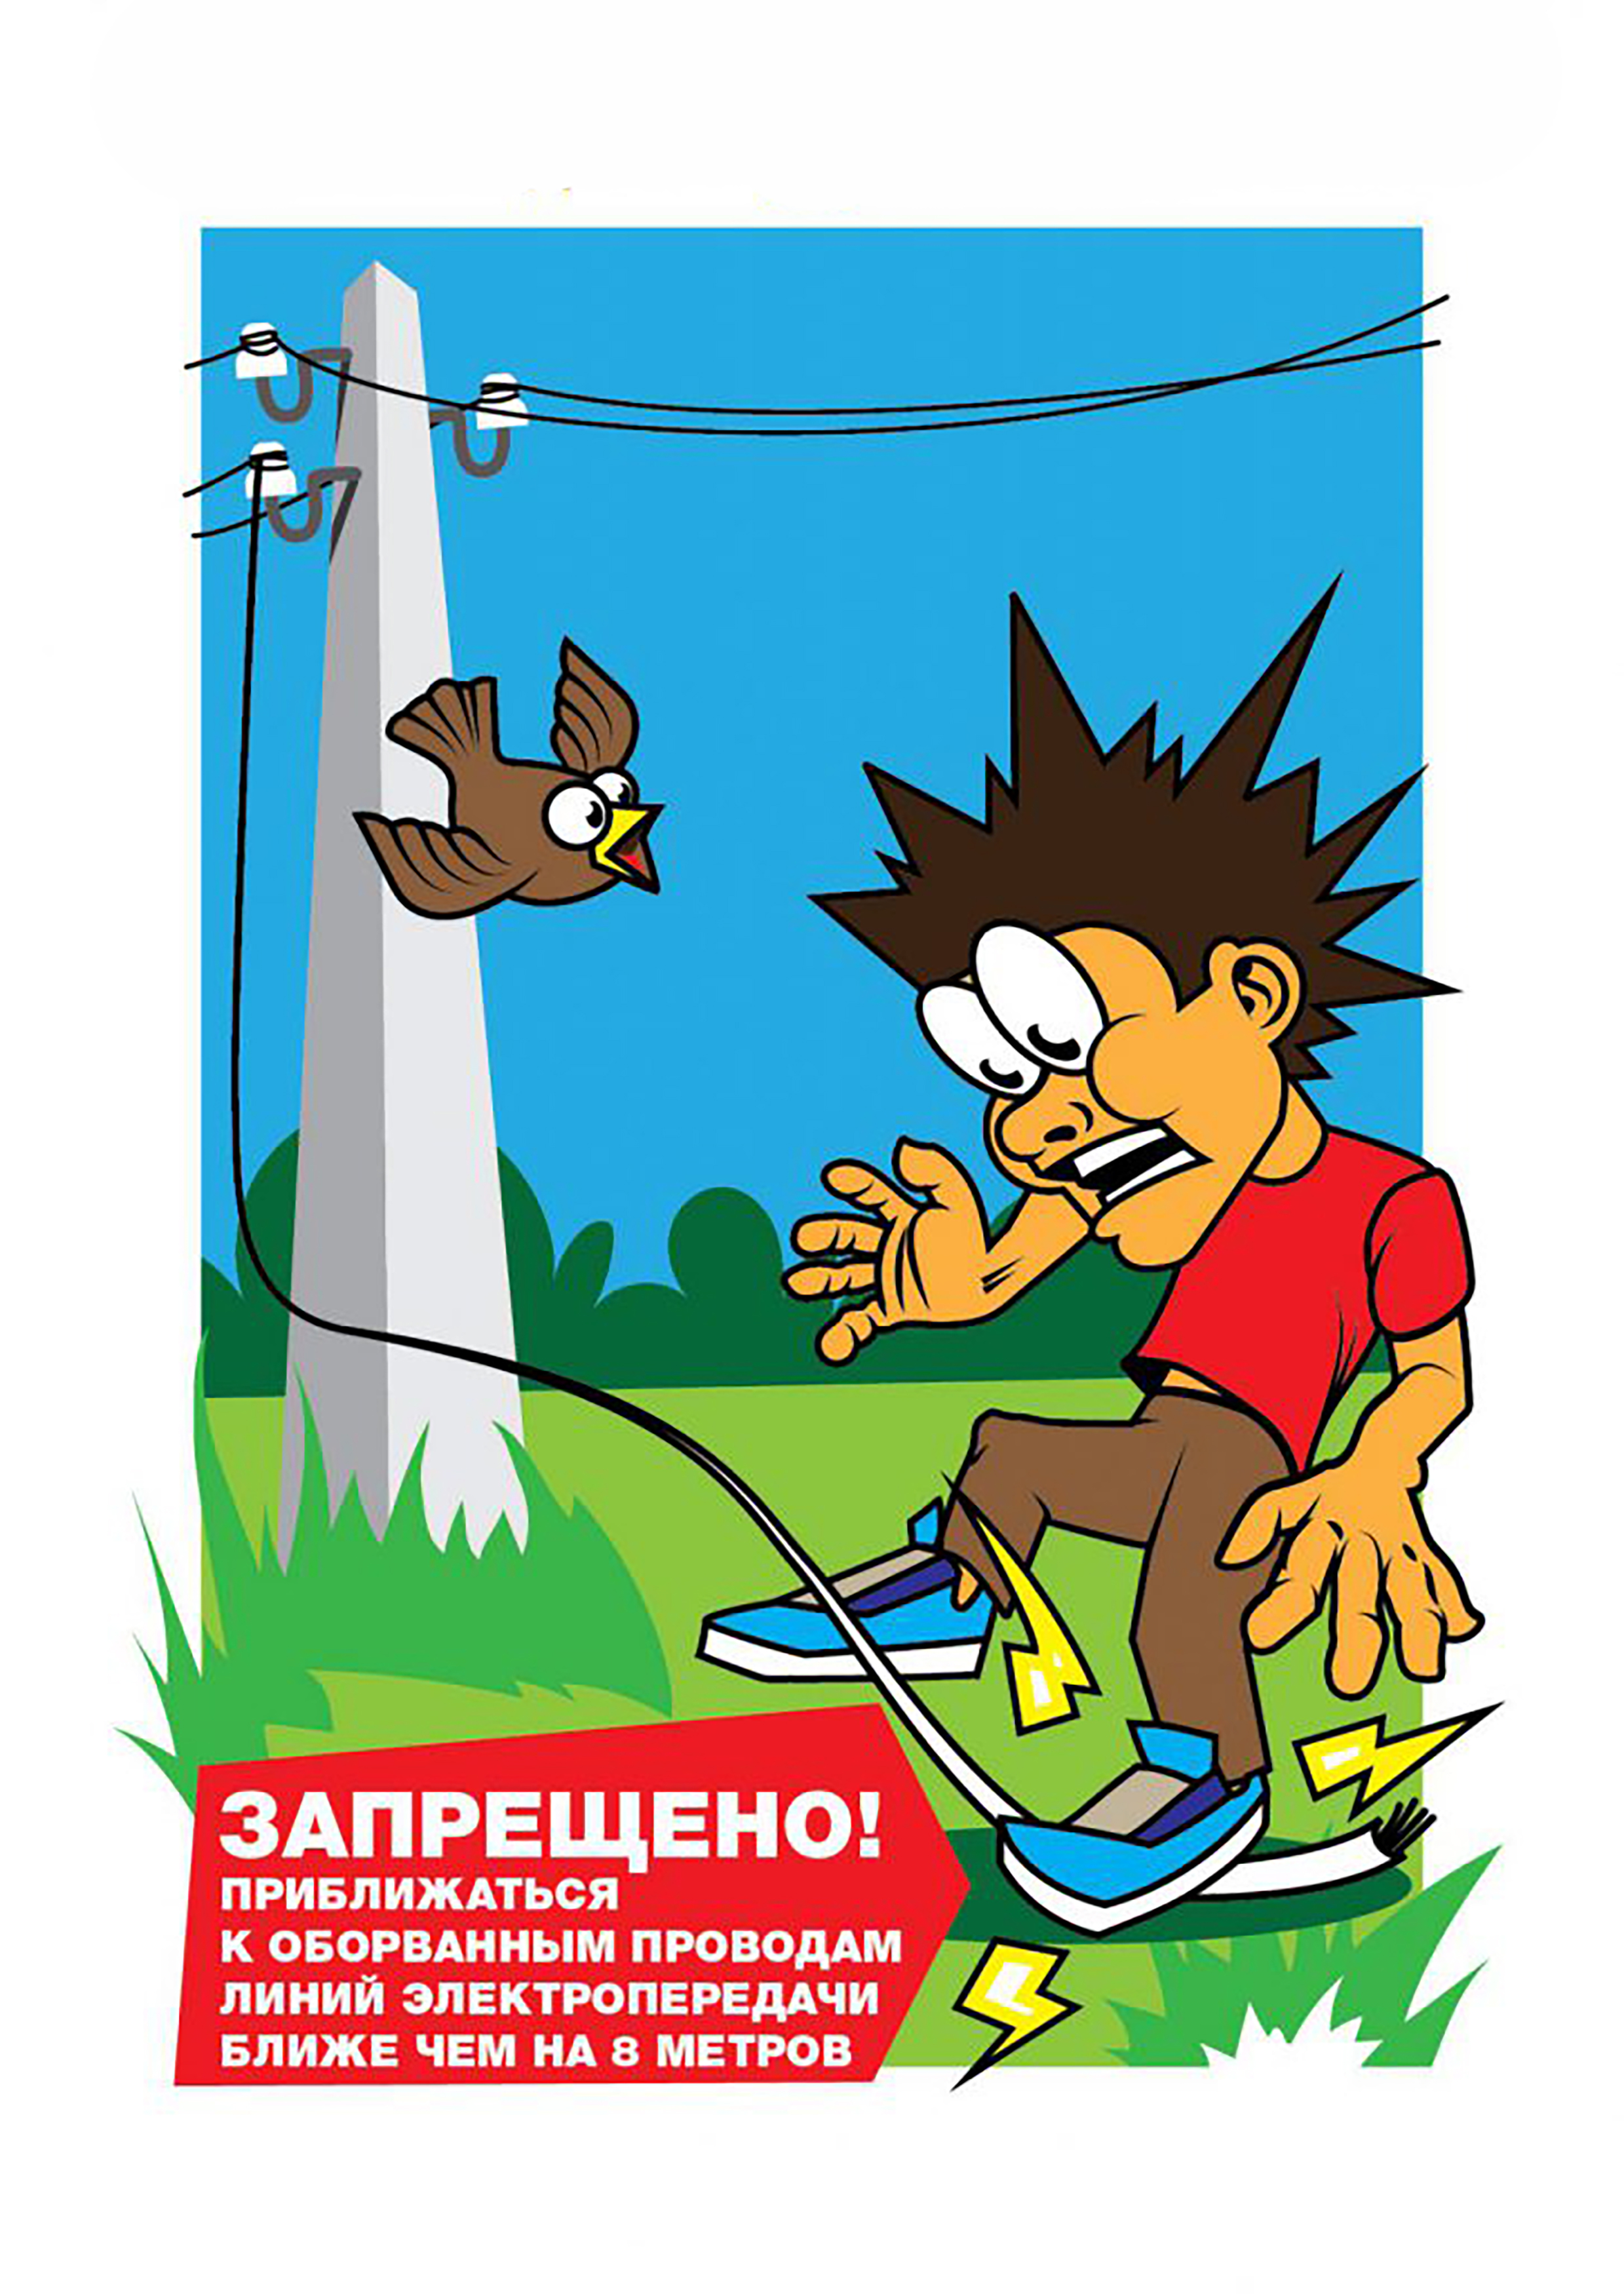 Запрет на приближение к человеку. Электробезопасность. Электробезопасность плакат для детей. Энергонадзор предупреждает. Плакат о энергобезопасности.